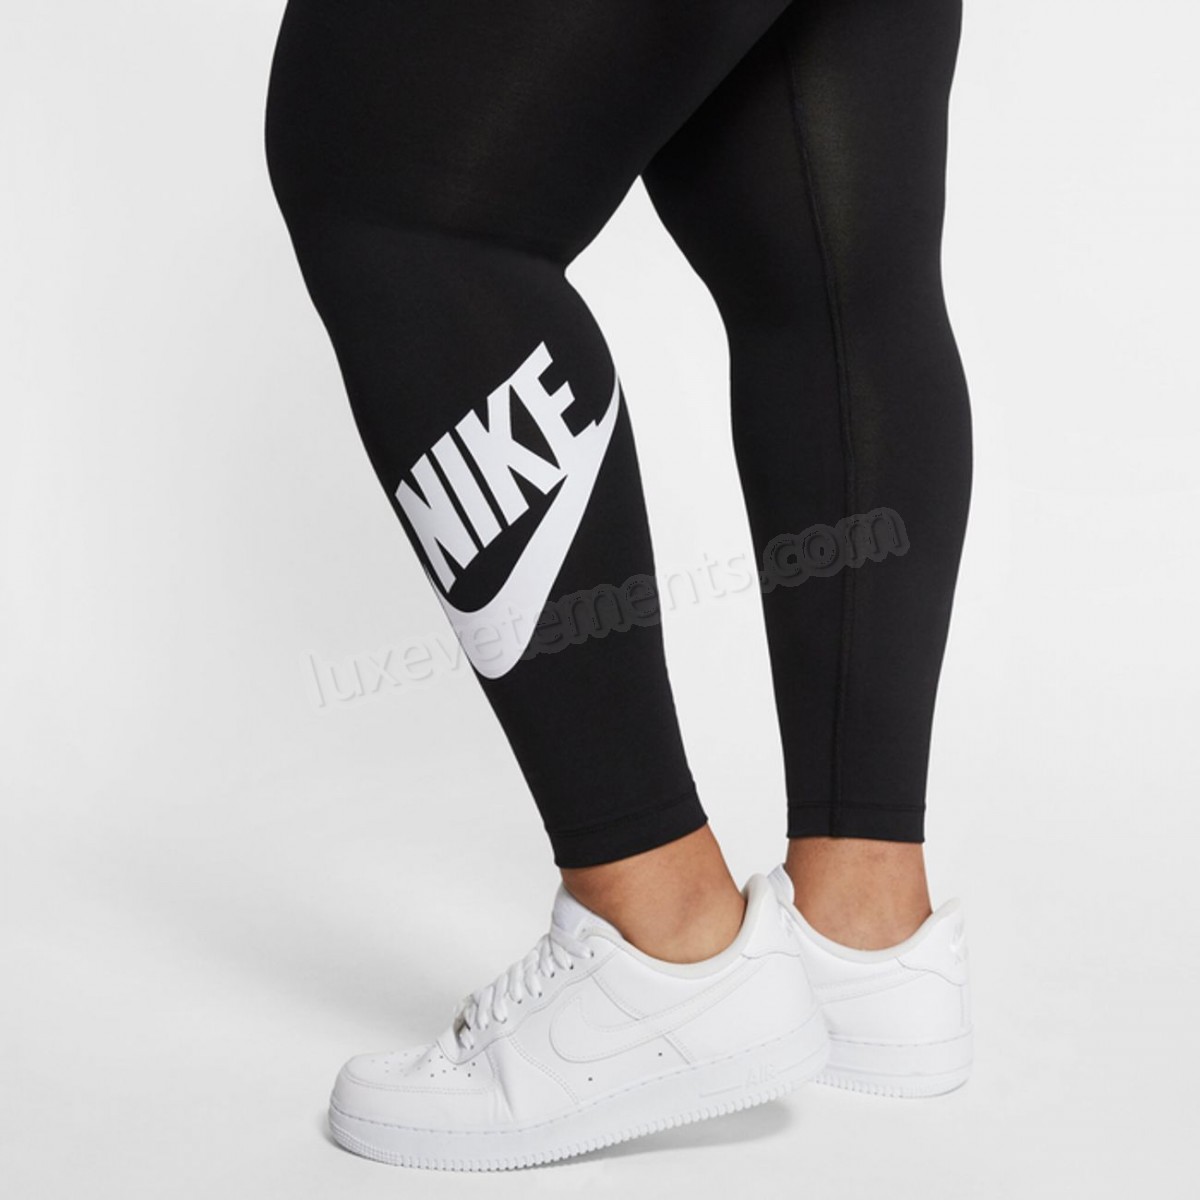 Nike-LEGGING femme NIKE Nike One (grande taille) Vente en ligne - -4